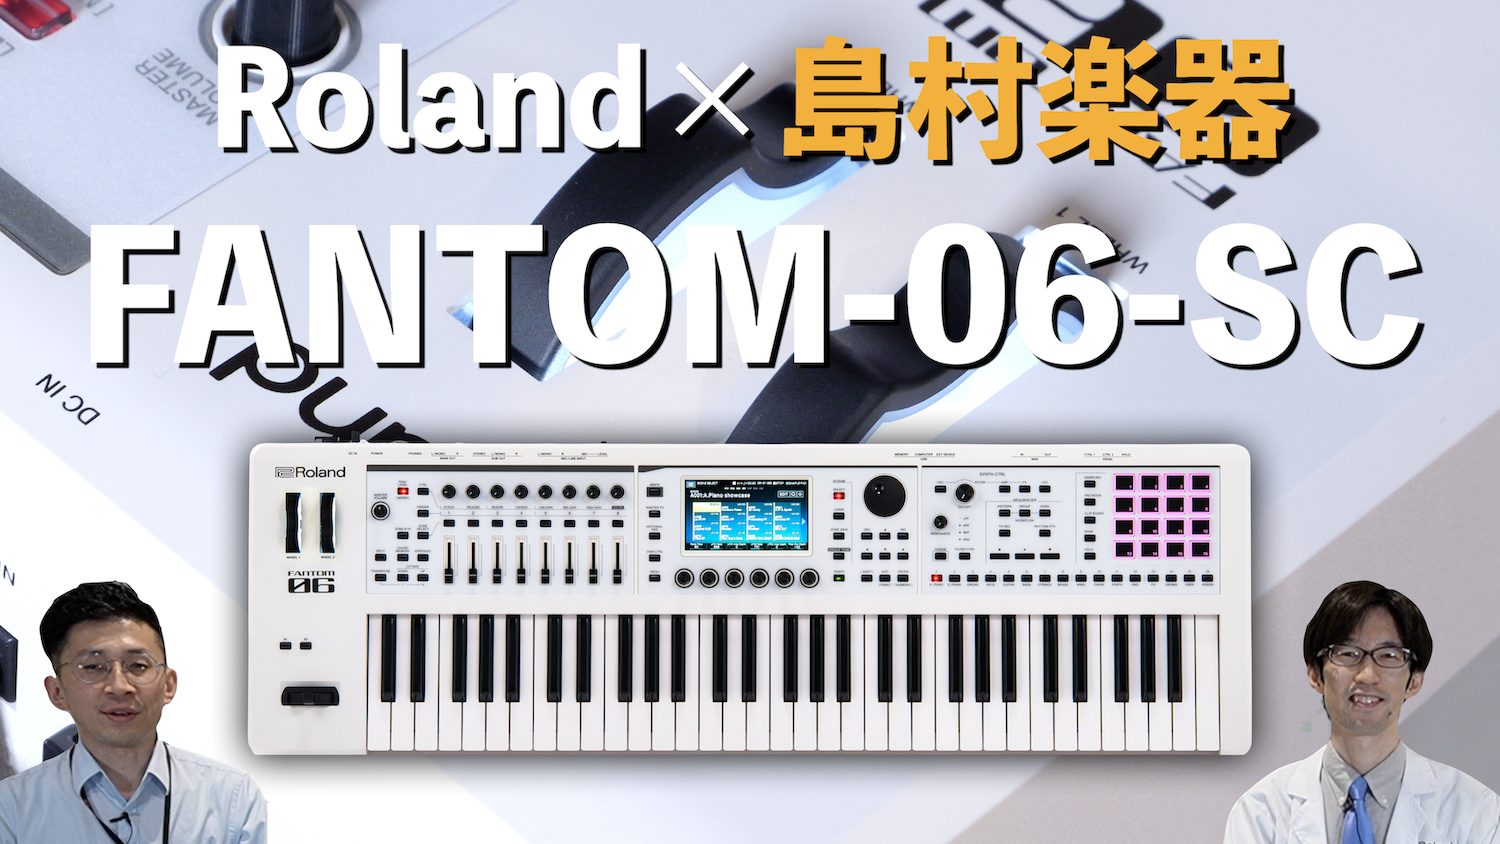 こんにちは、名古屋パルコ店の立浦です。2022年に登場したRolandの最新ワークステーションシンセサイザーFANTOM-0シリーズの中でも高音質・多機能・軽量と3拍子揃った61鍵盤仕様の人気モデルFANTOM-06に島村楽器限定のホワイトカラーモデル“FANTOM-06-SC”が登場！ いかがでし […]